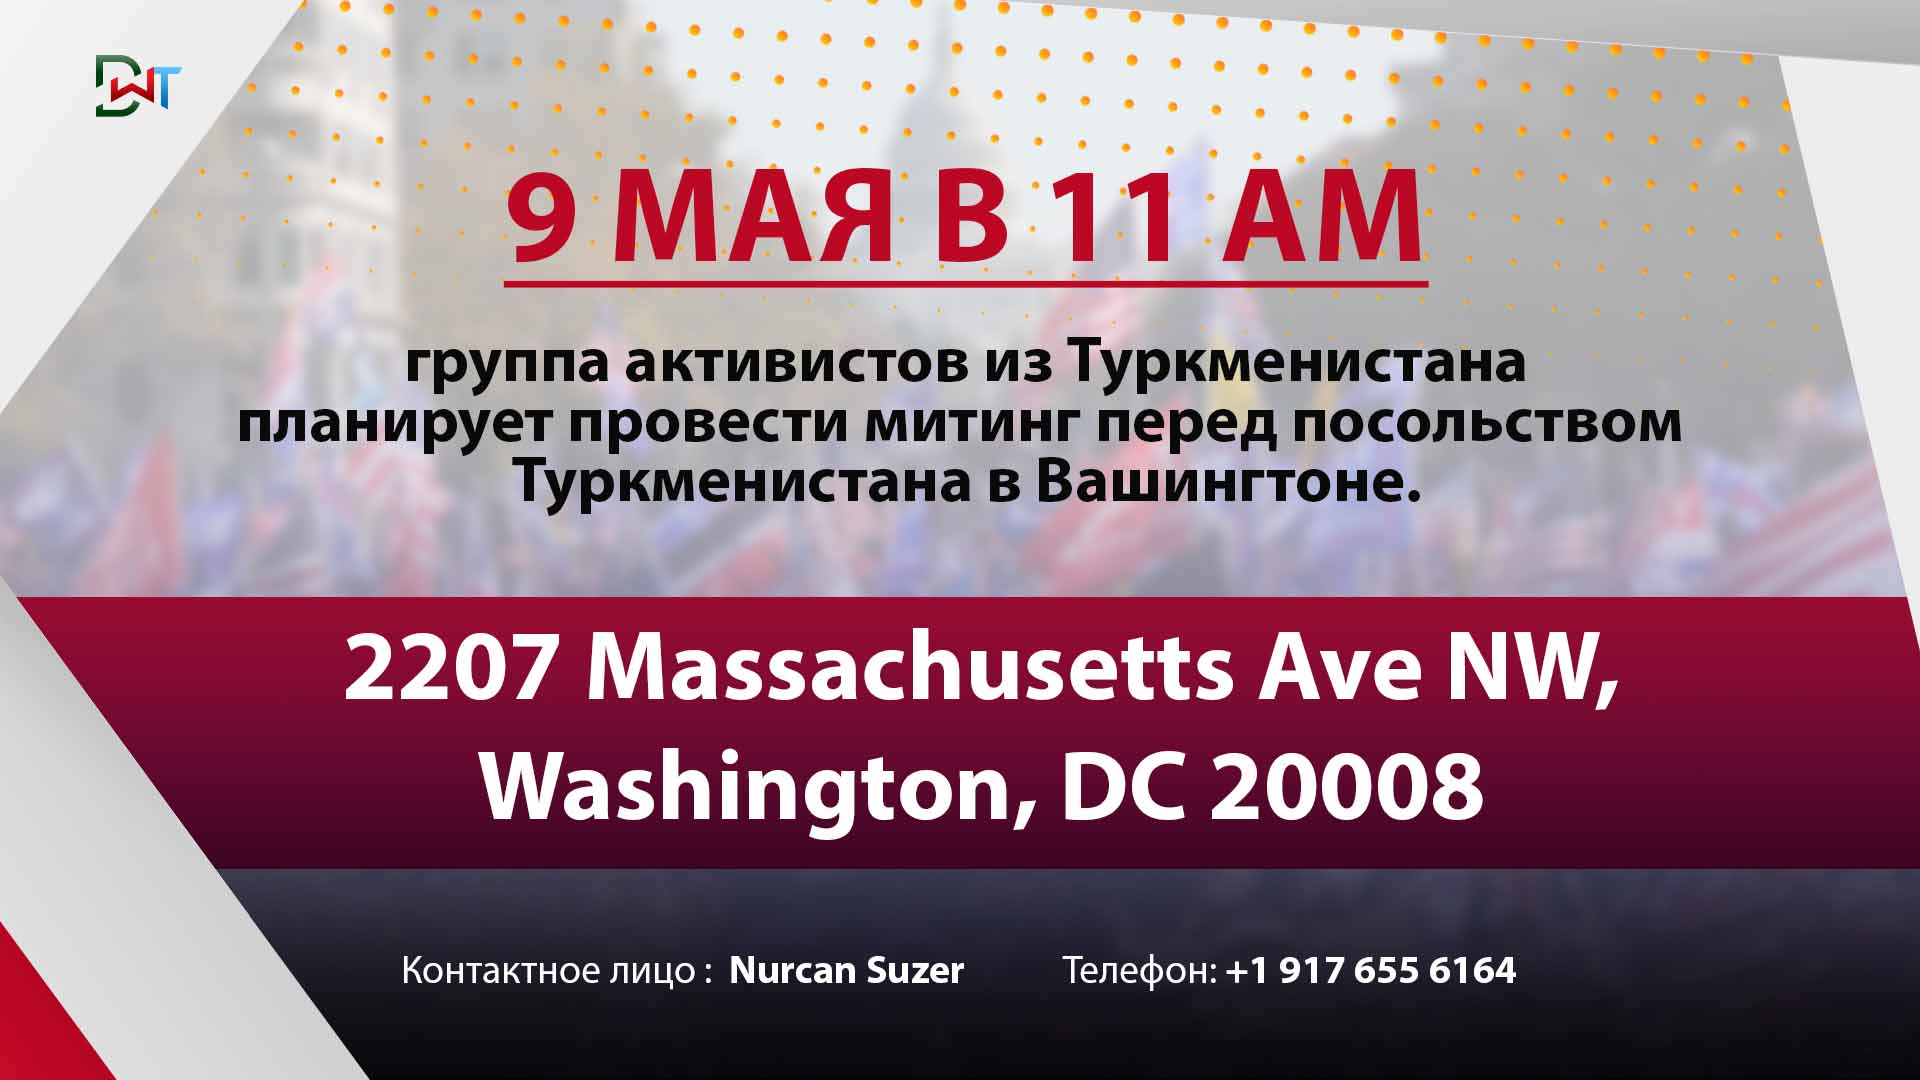 Мы демократическая оппозиция Туркменистана организовываем митинг в Вашингтоне напротив Туркменского посольства